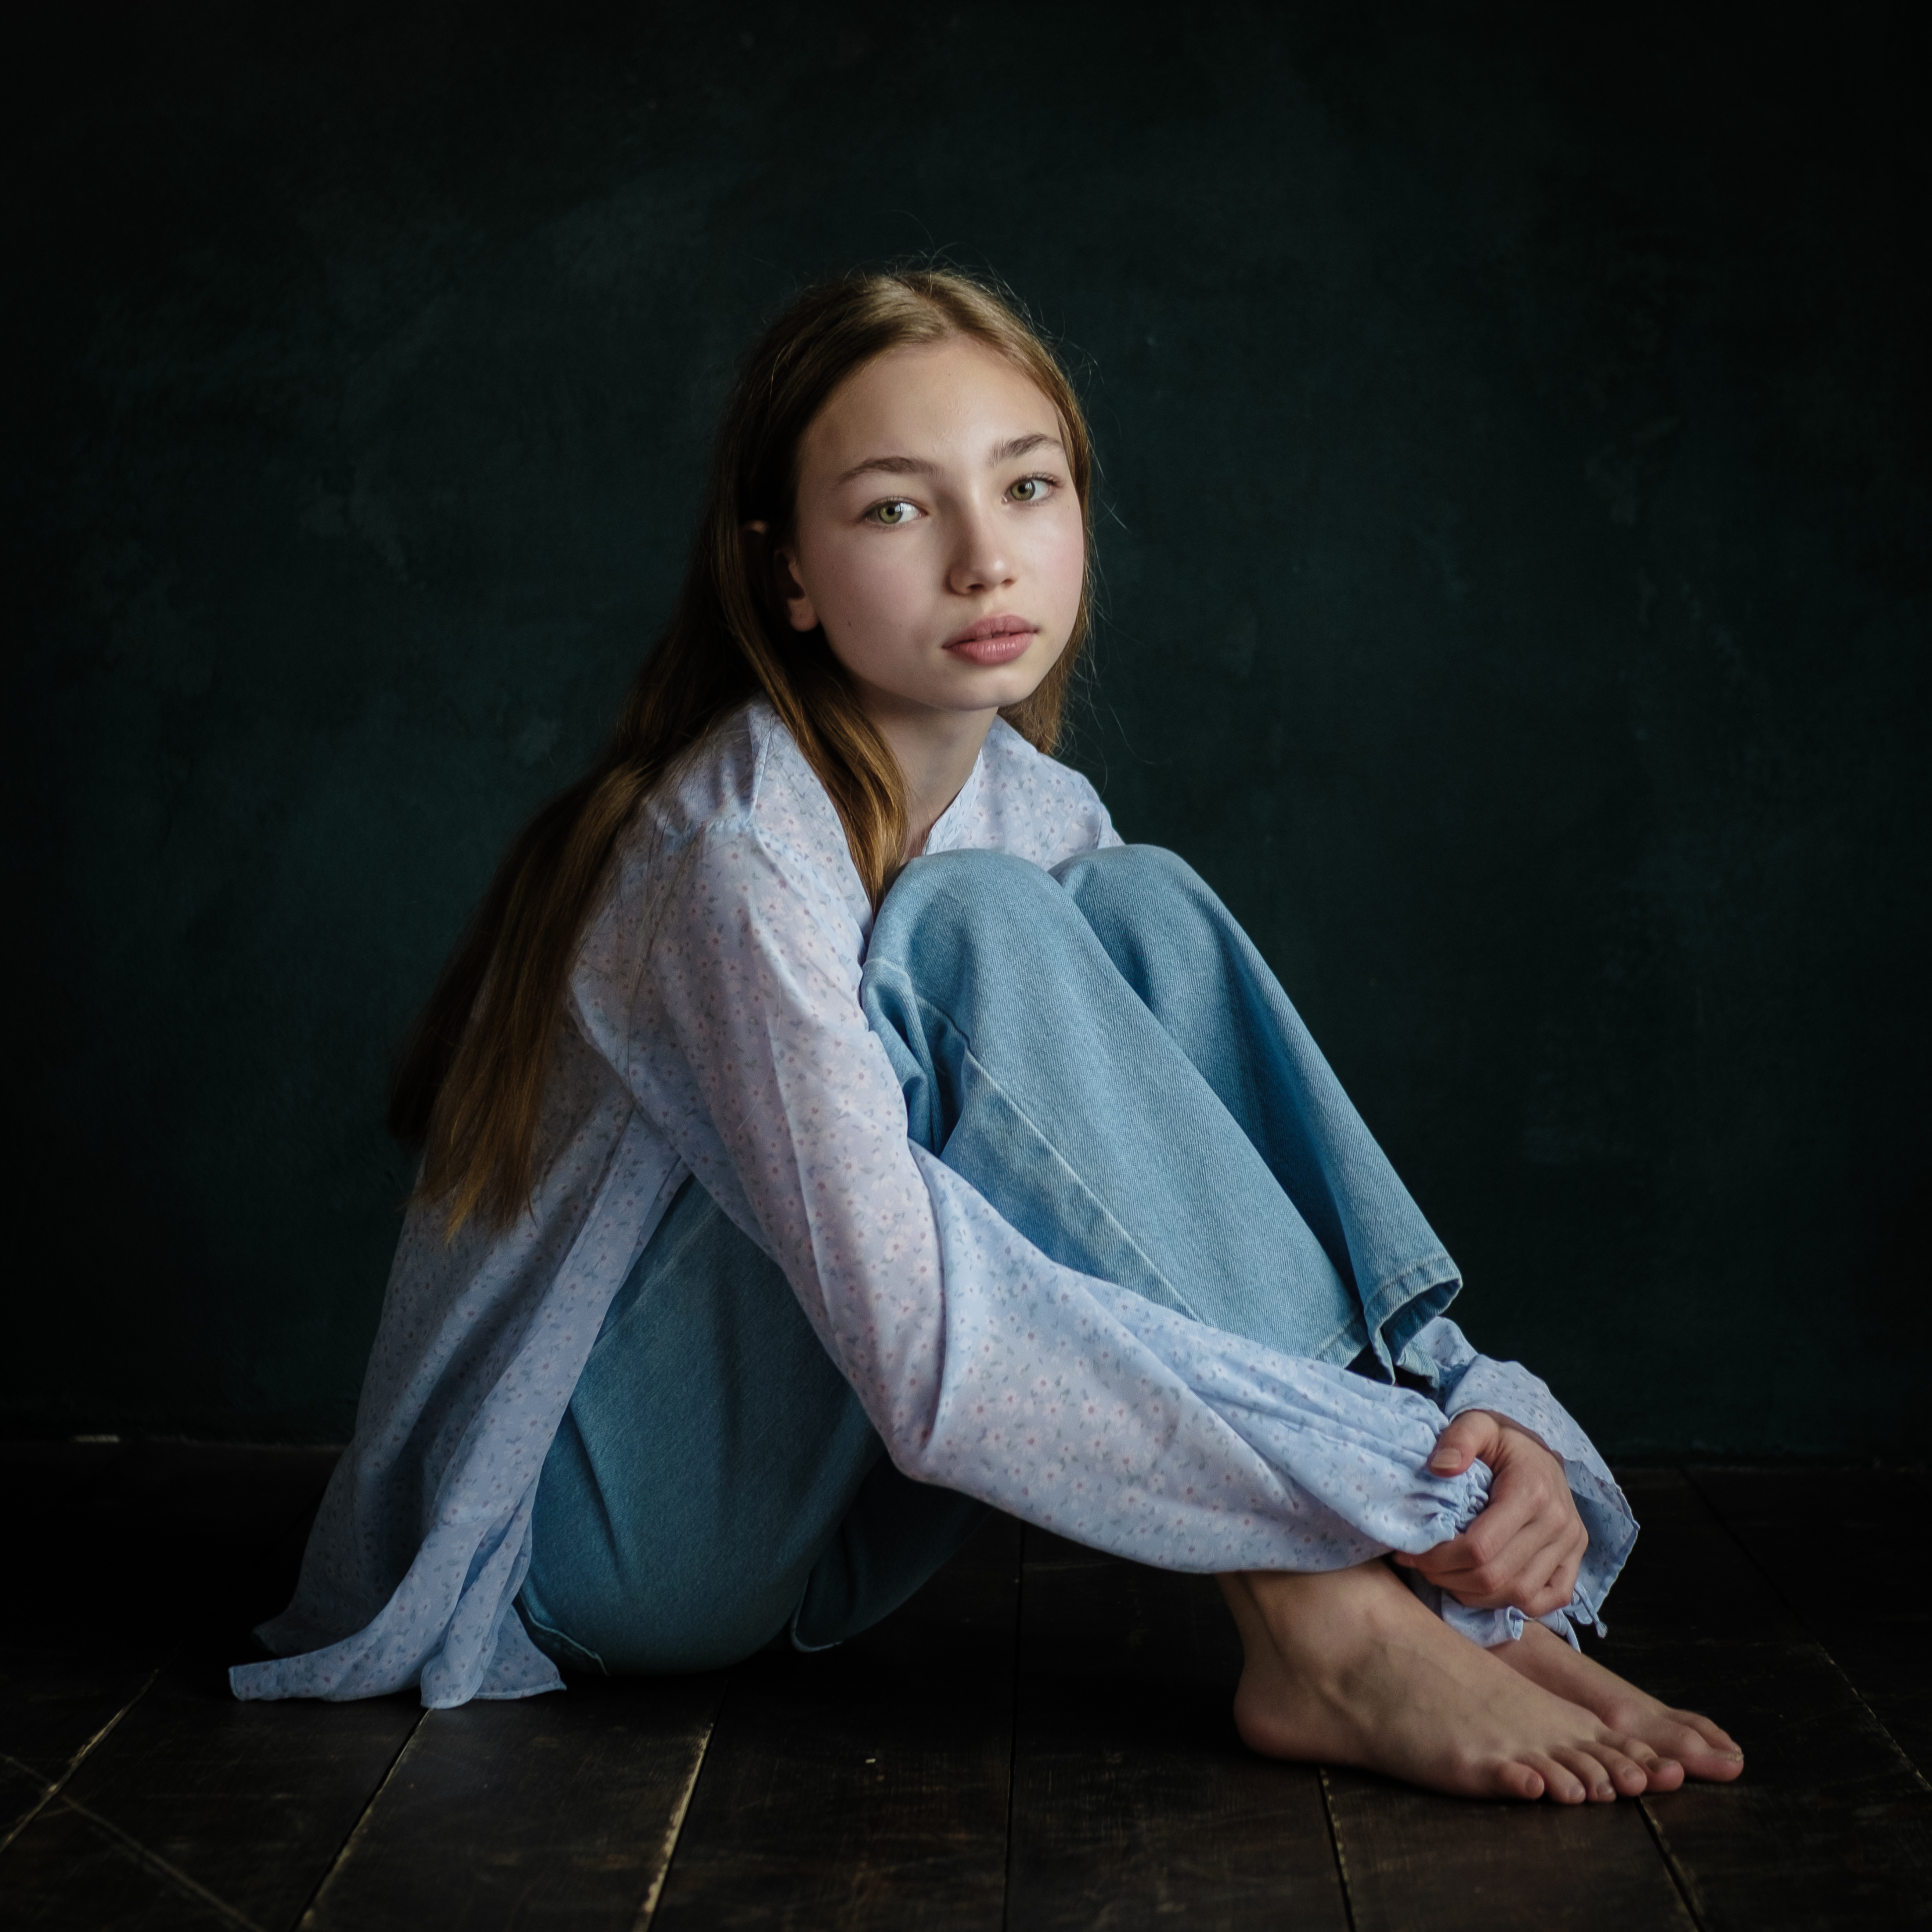 детский портрет, портретный фотограф, модельная визитка, портфолио, александр шведов, Aleksandr Shvedov